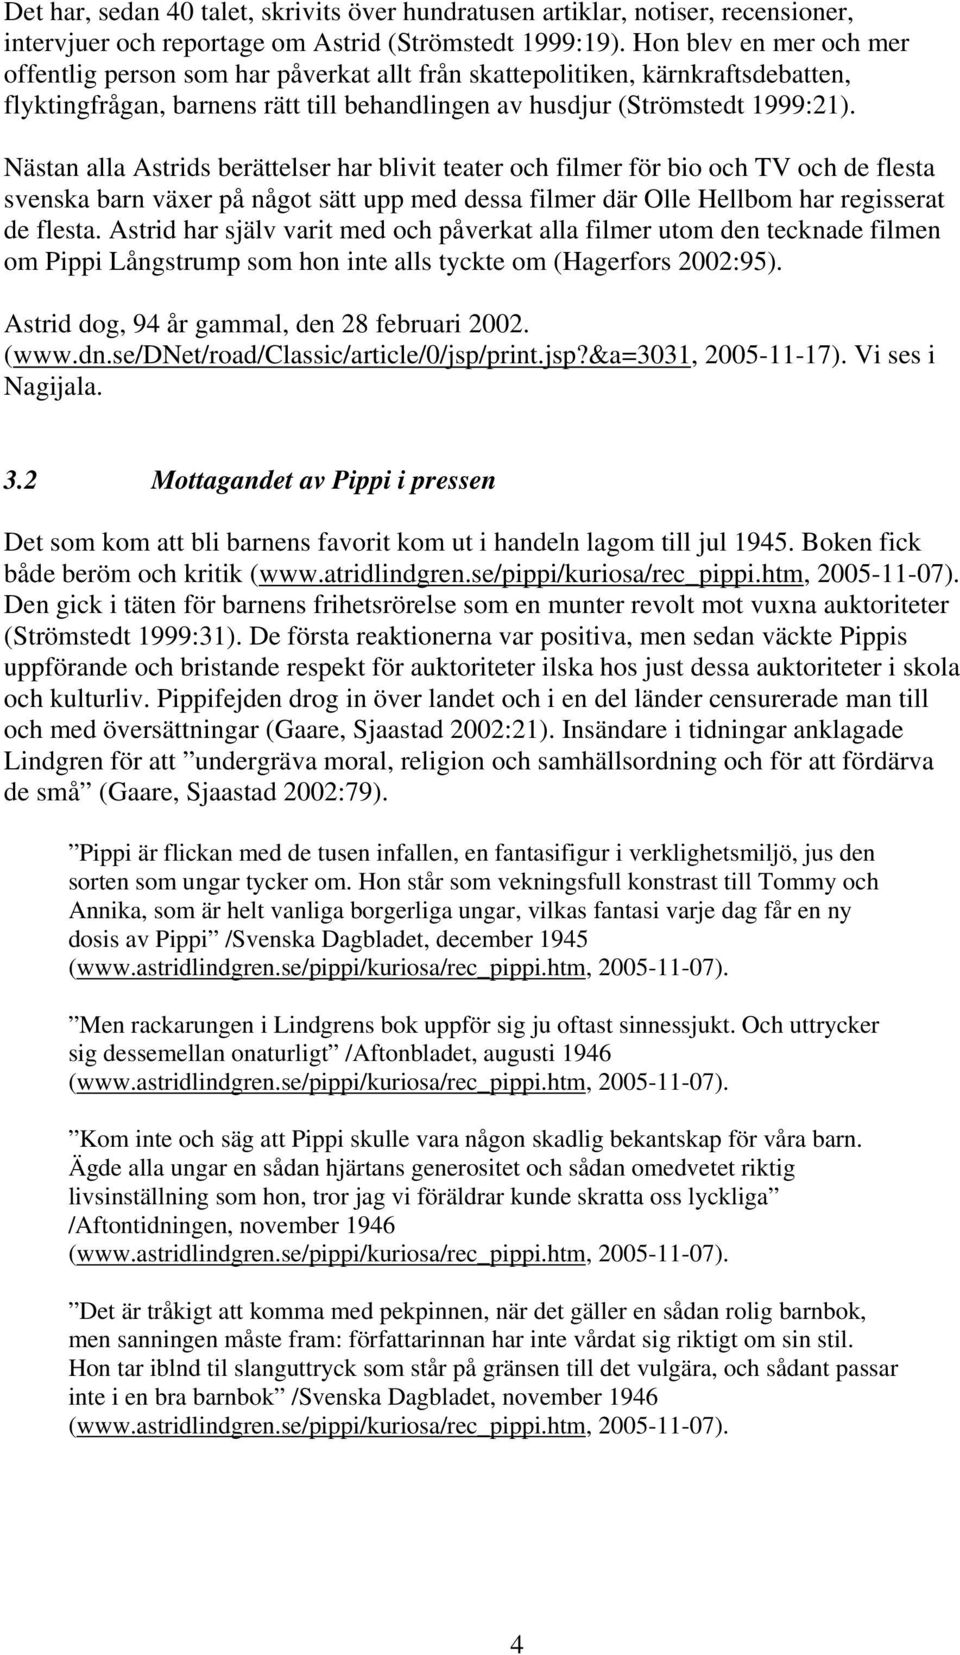 Den tecknade Pippi Långstrump - PDF Free Download